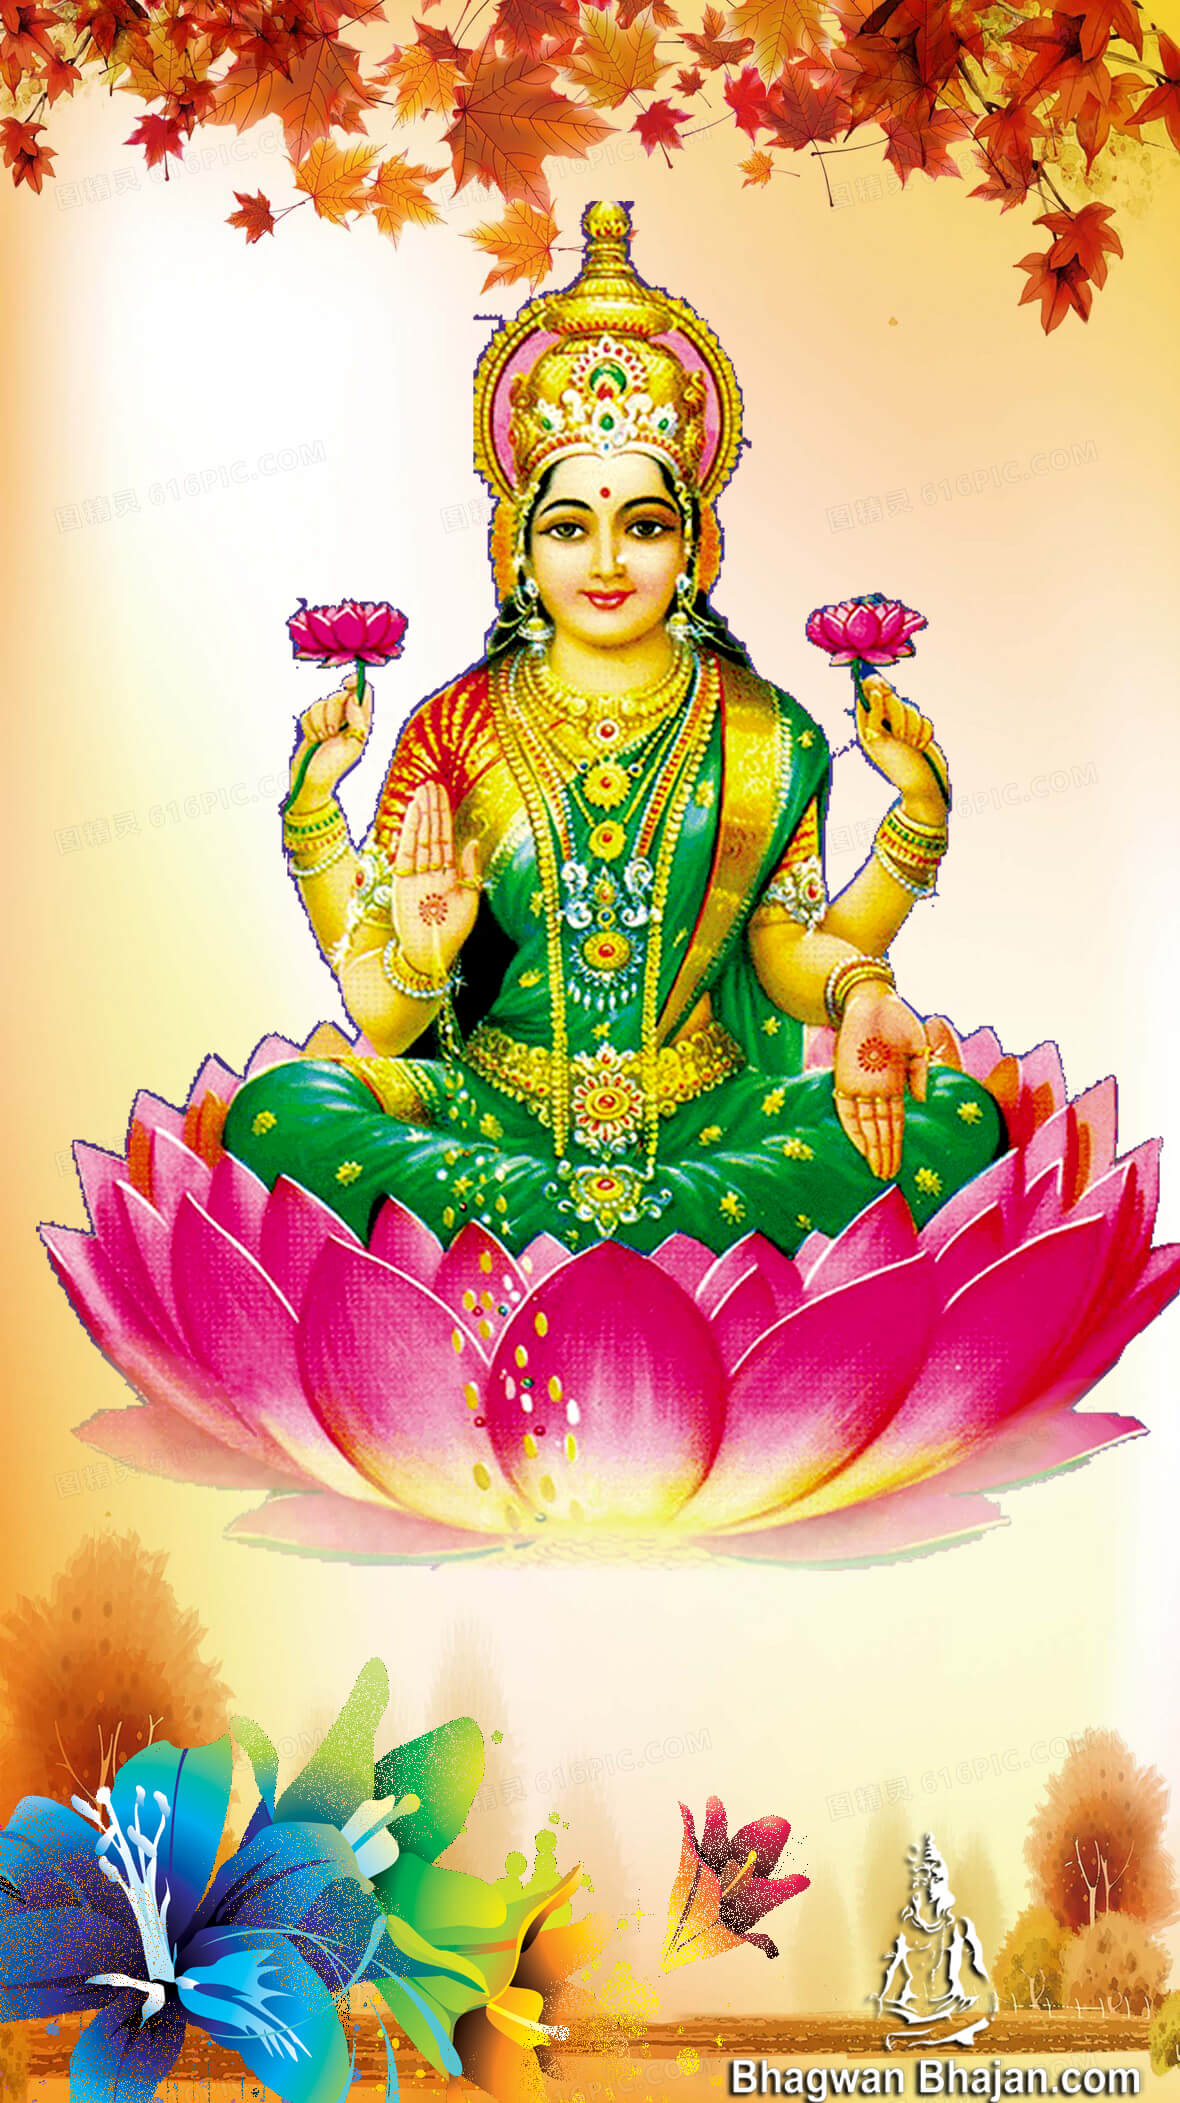 Download Free HD Wallpapers of Maa laxmi(lakshmi) Devi | Maa Lakshmi  Dhanteras Wallpapers